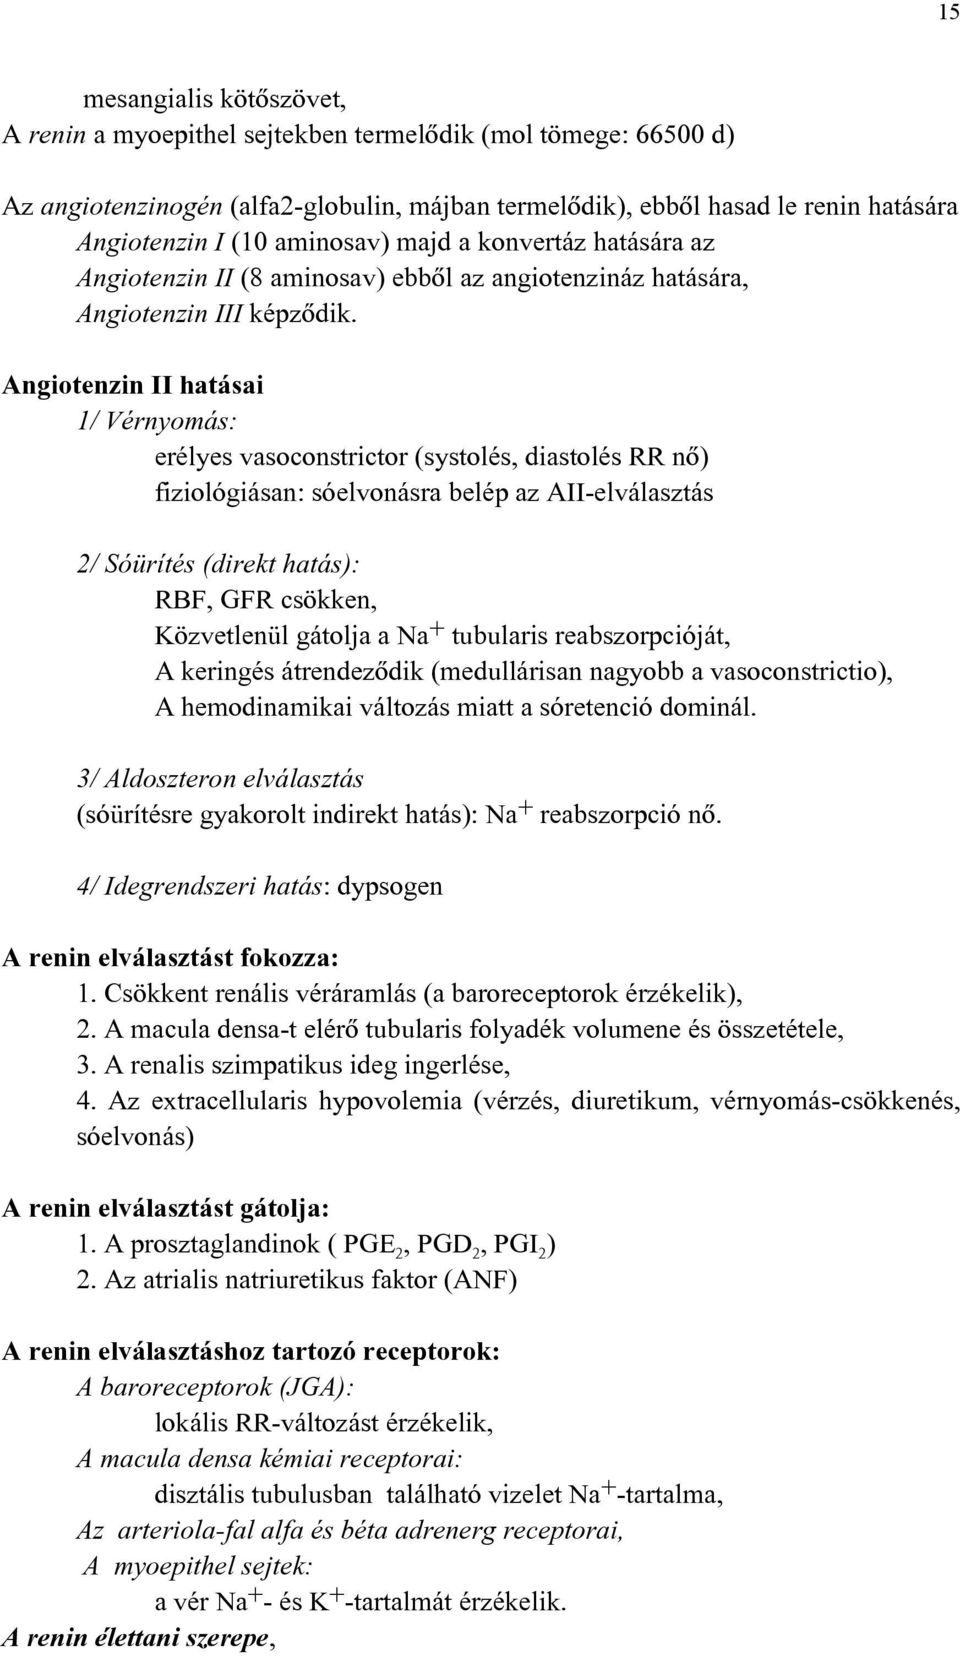 Angiotenzin II hatásai 1/ Vérnyomás: erélyes vasoconstrictor (systolés, diastolés RR nõ) fiziológiásan: sóelvonásra belép az AII-elválasztás 2/ Sóürítés (direkt hatás): RBF, GFR csökken, Közvetlenül